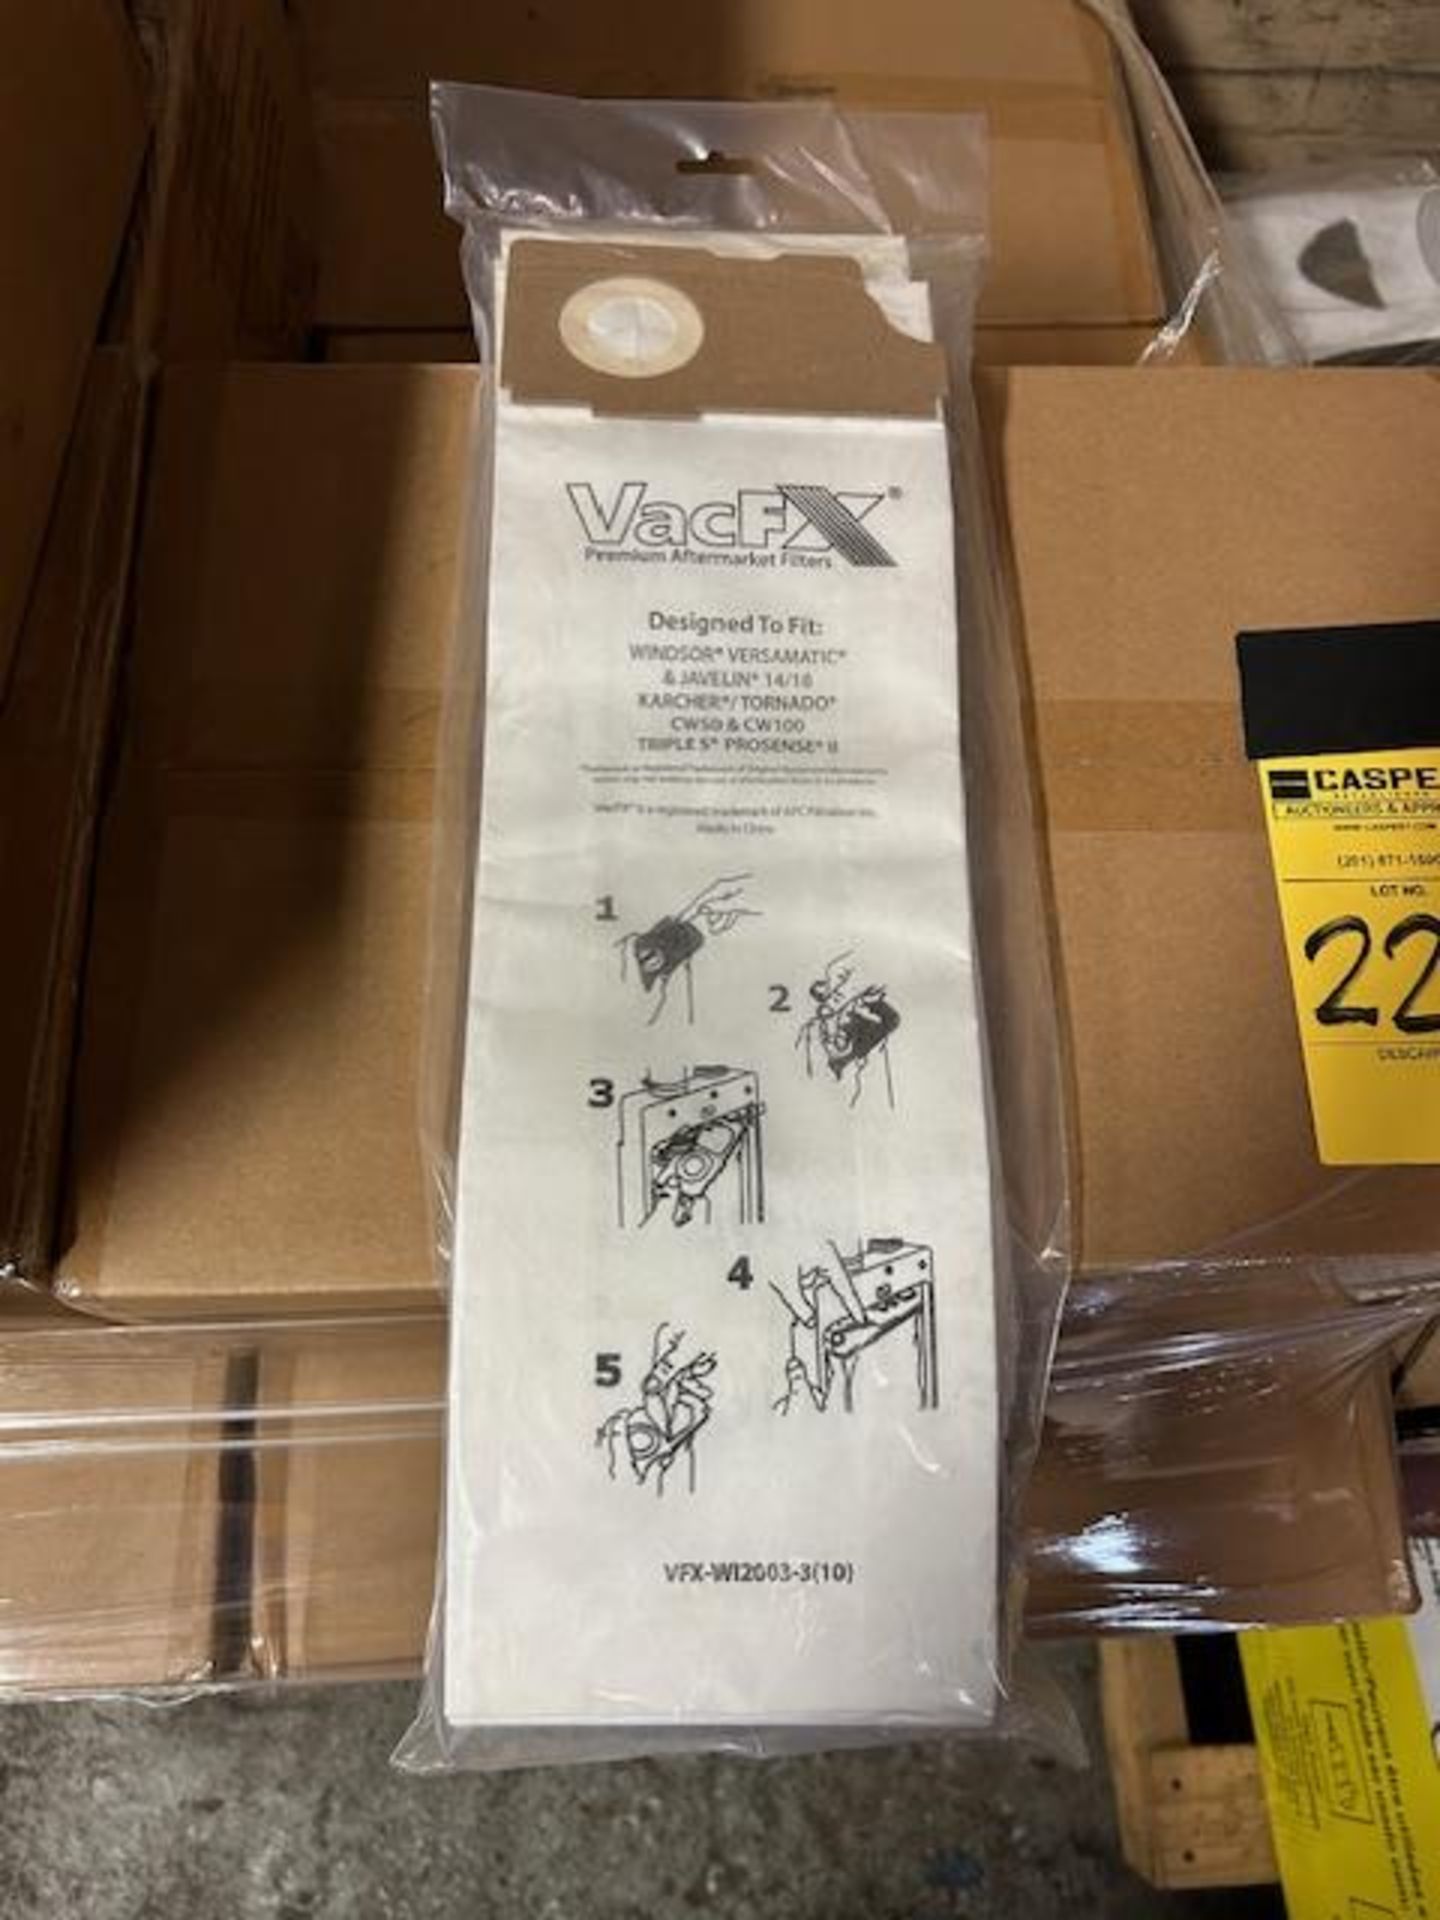 (280) Packs - Vacuum Bags VFX-W12003-3 (10 Bags/Pack) for Windsor Versamatic